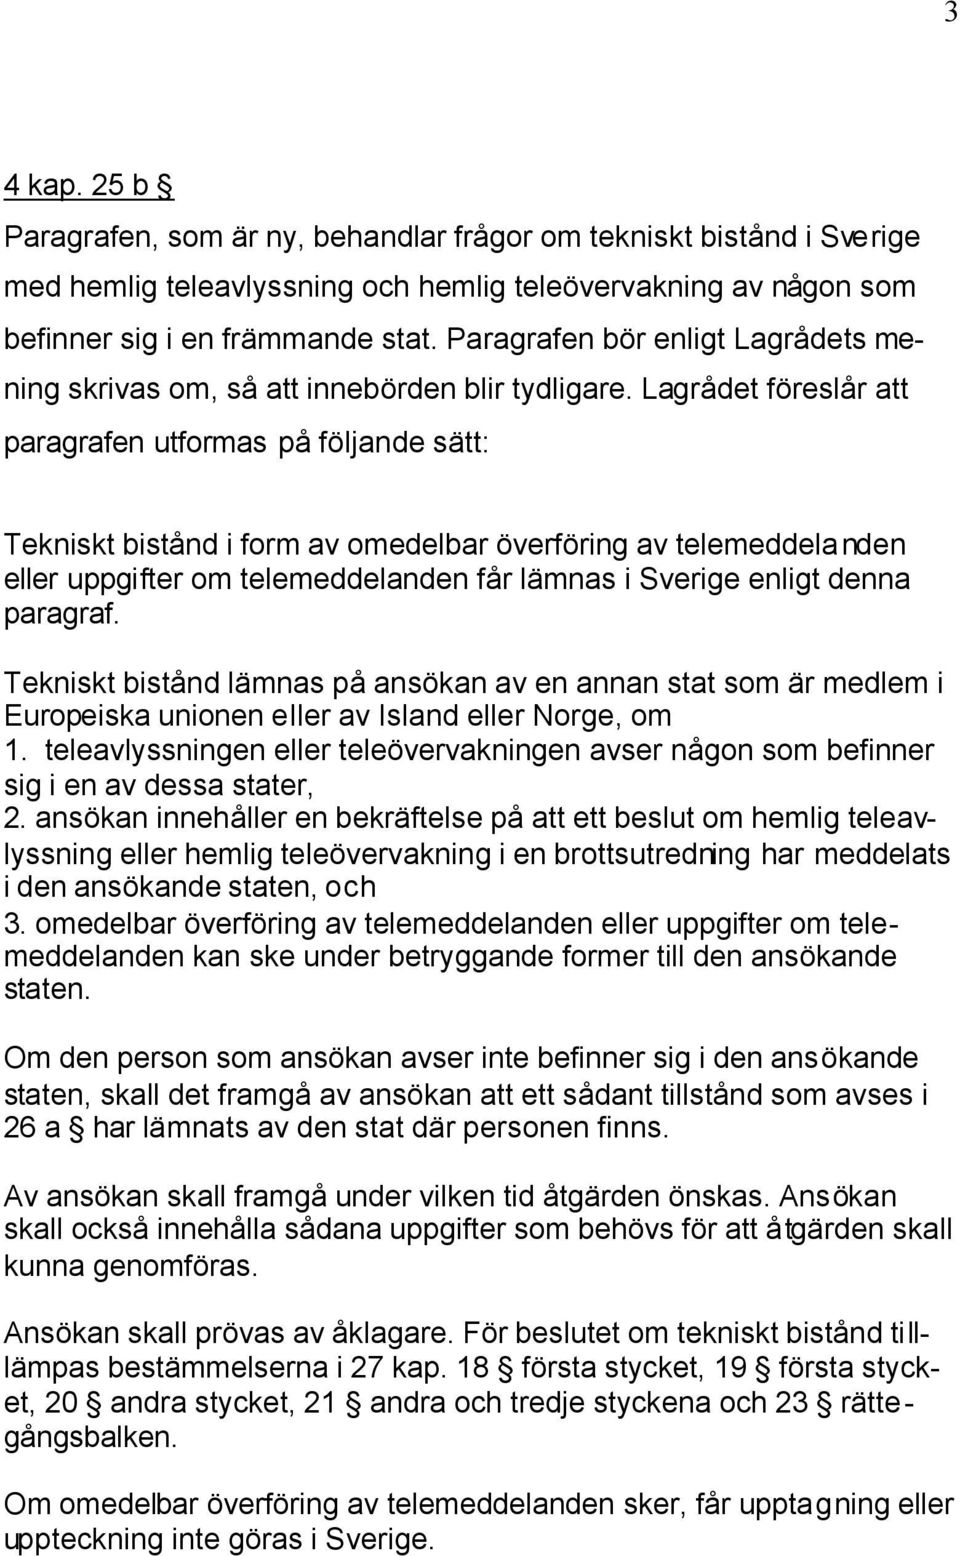 Lagrådet föreslår att paragrafen utformas på följande sätt: Tekniskt bistånd i form av omedelbar överföring av telemeddelanden eller uppgifter om telemeddelanden får lämnas i Sverige enligt denna